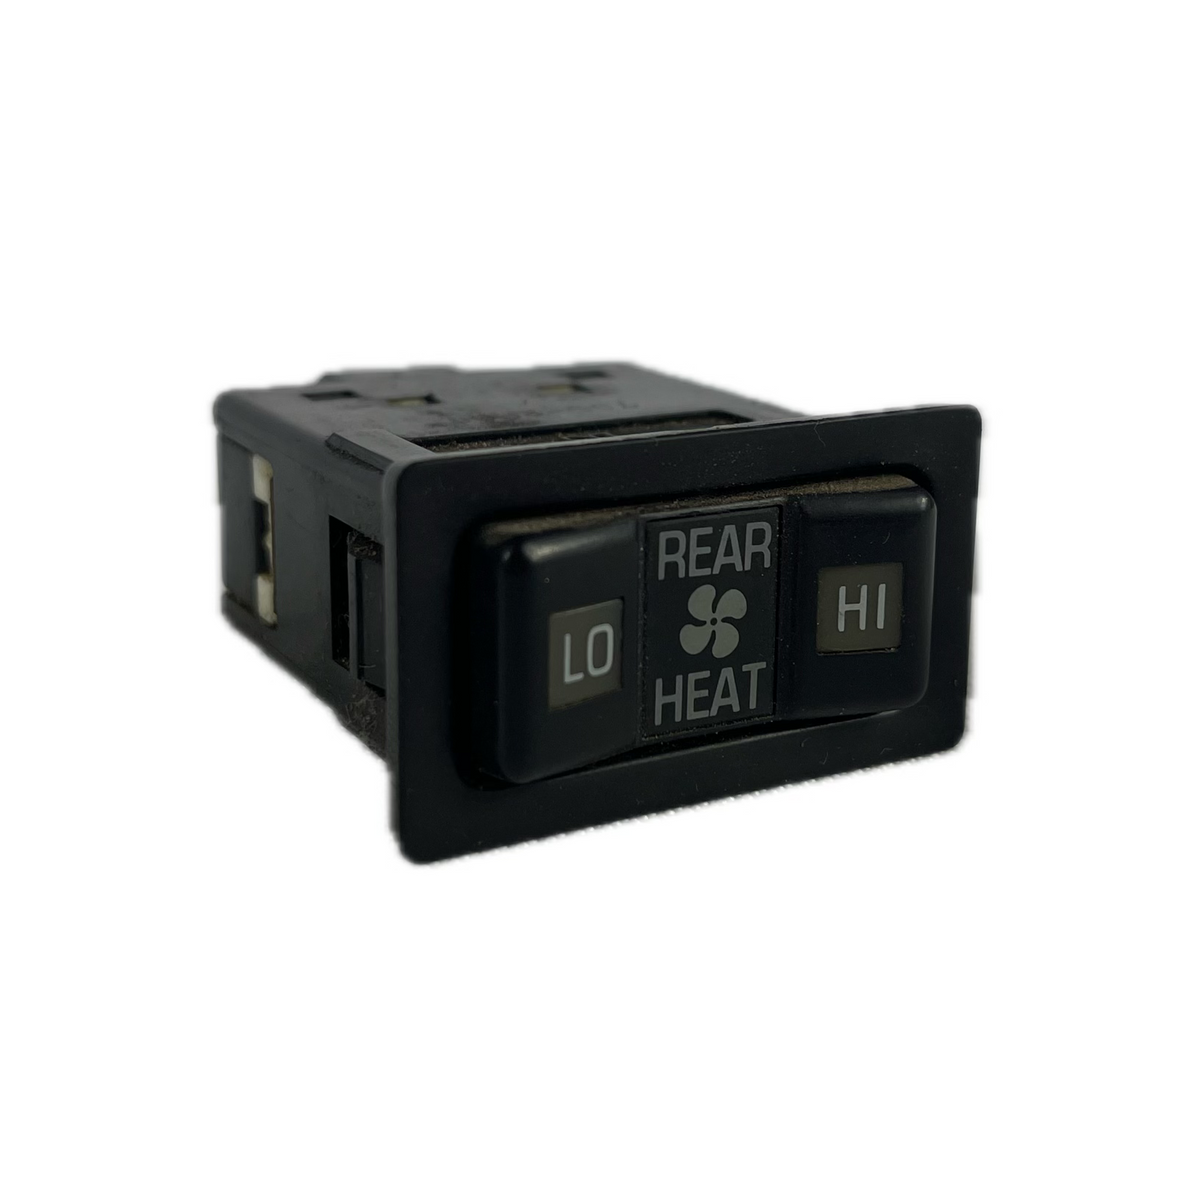 Used - Rear Heater Switch - FJ80 1991-1997